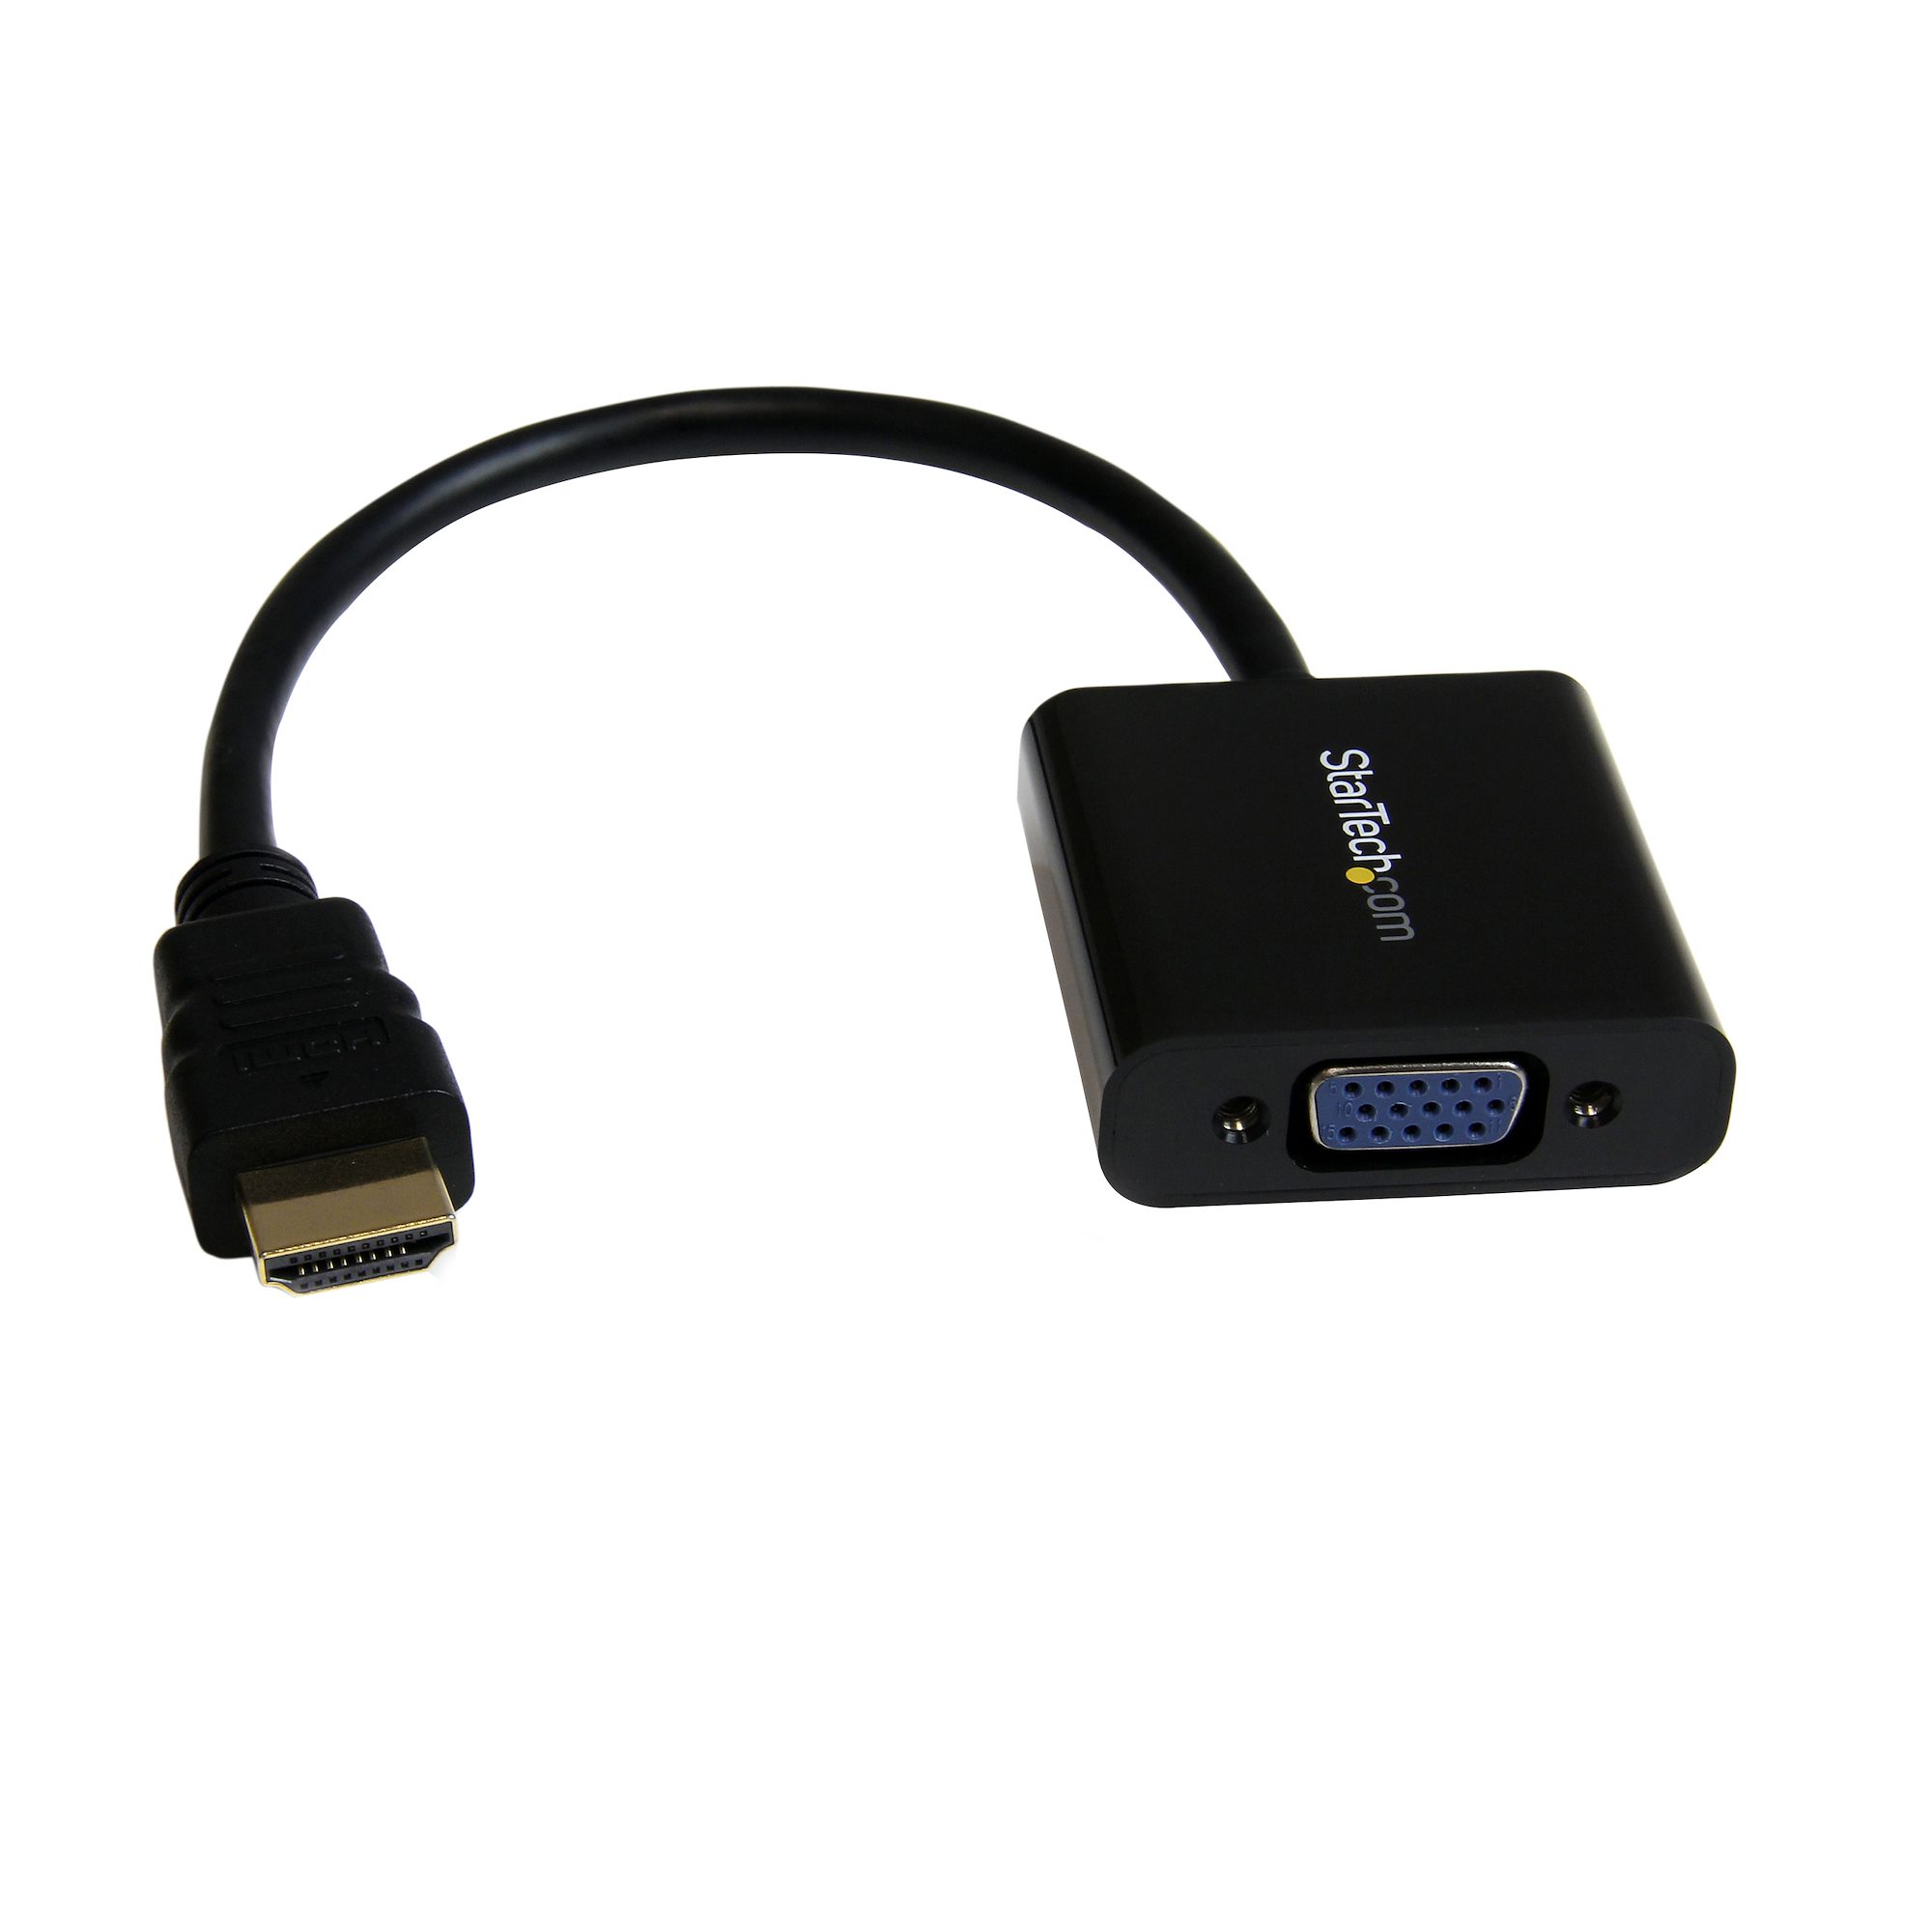 【HD2VGAE2】HDMI TO VGA ADAPTER - 1080P - 19